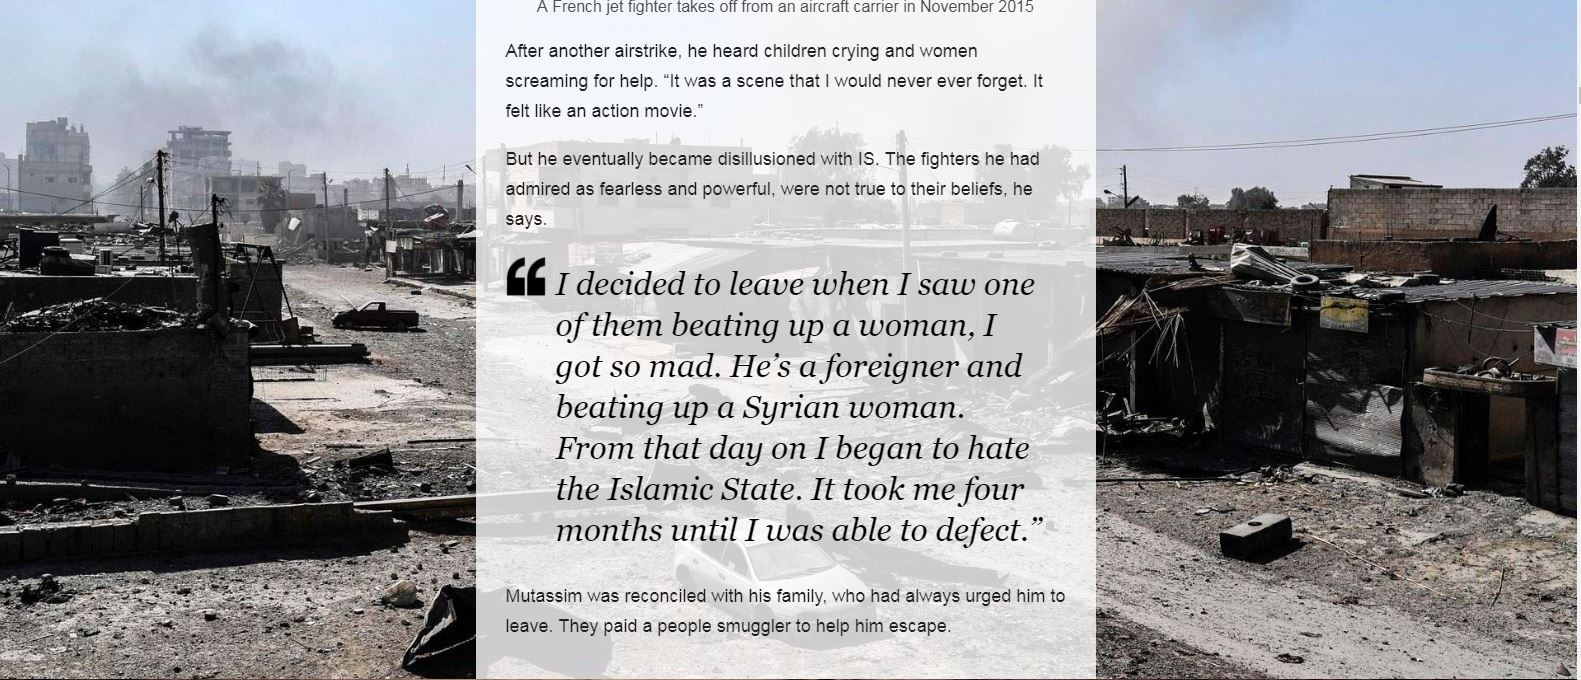 عمر قرر ترك داعش بعد مشاهدة مقاتل اجنبى بالتنظيم يضرب امرأة سورية